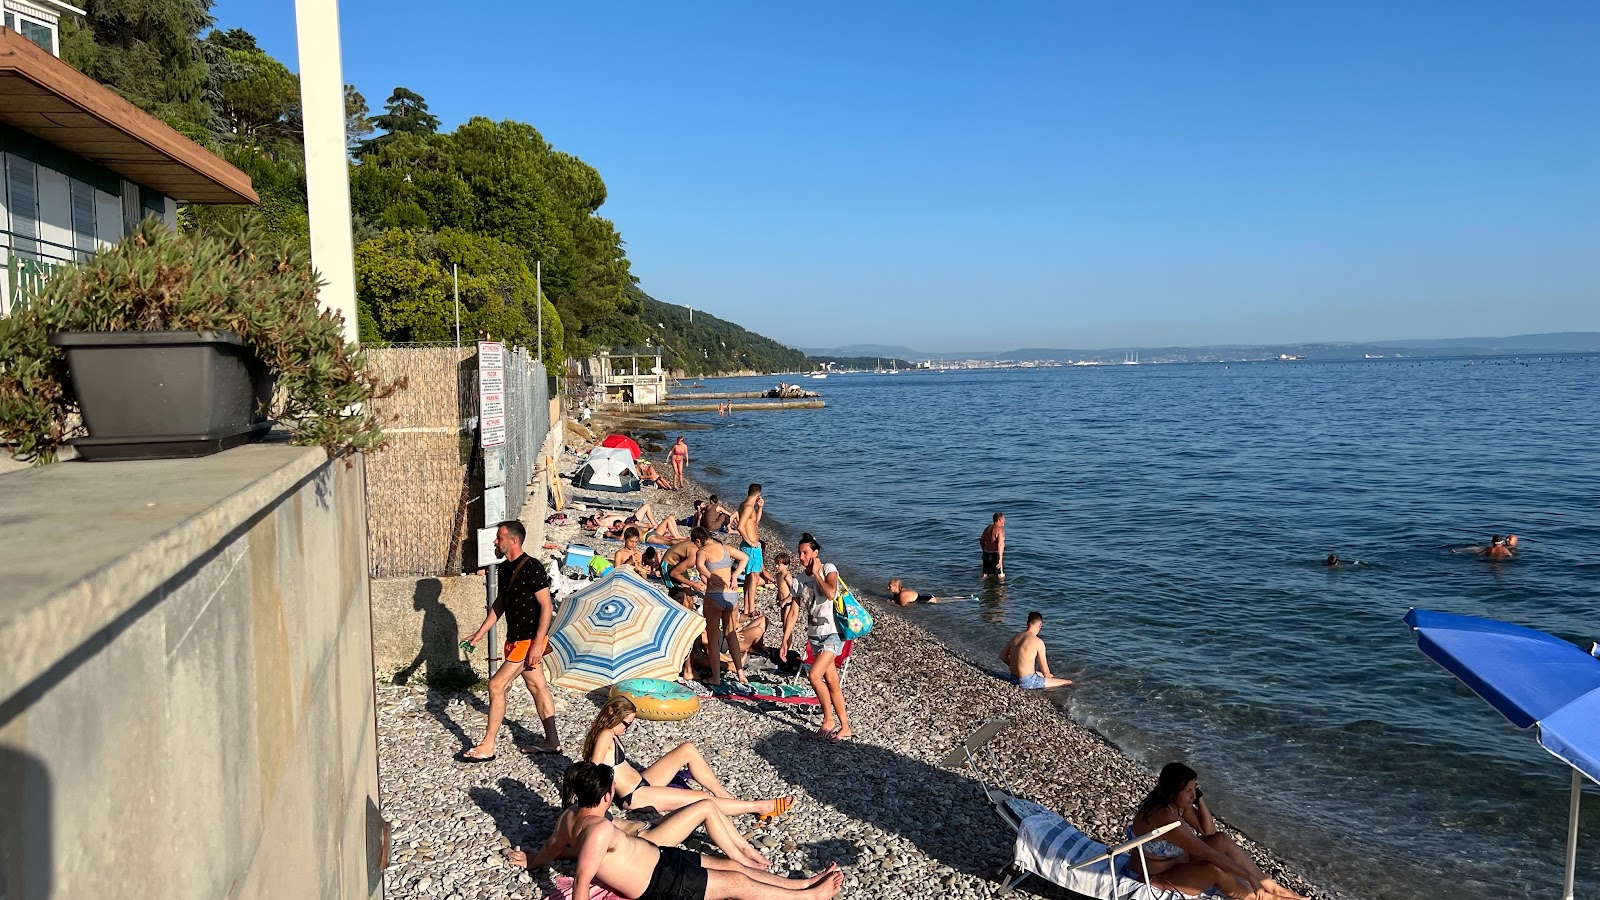 Photo of Spiaggia dei Filtri with gray fine pebble surface